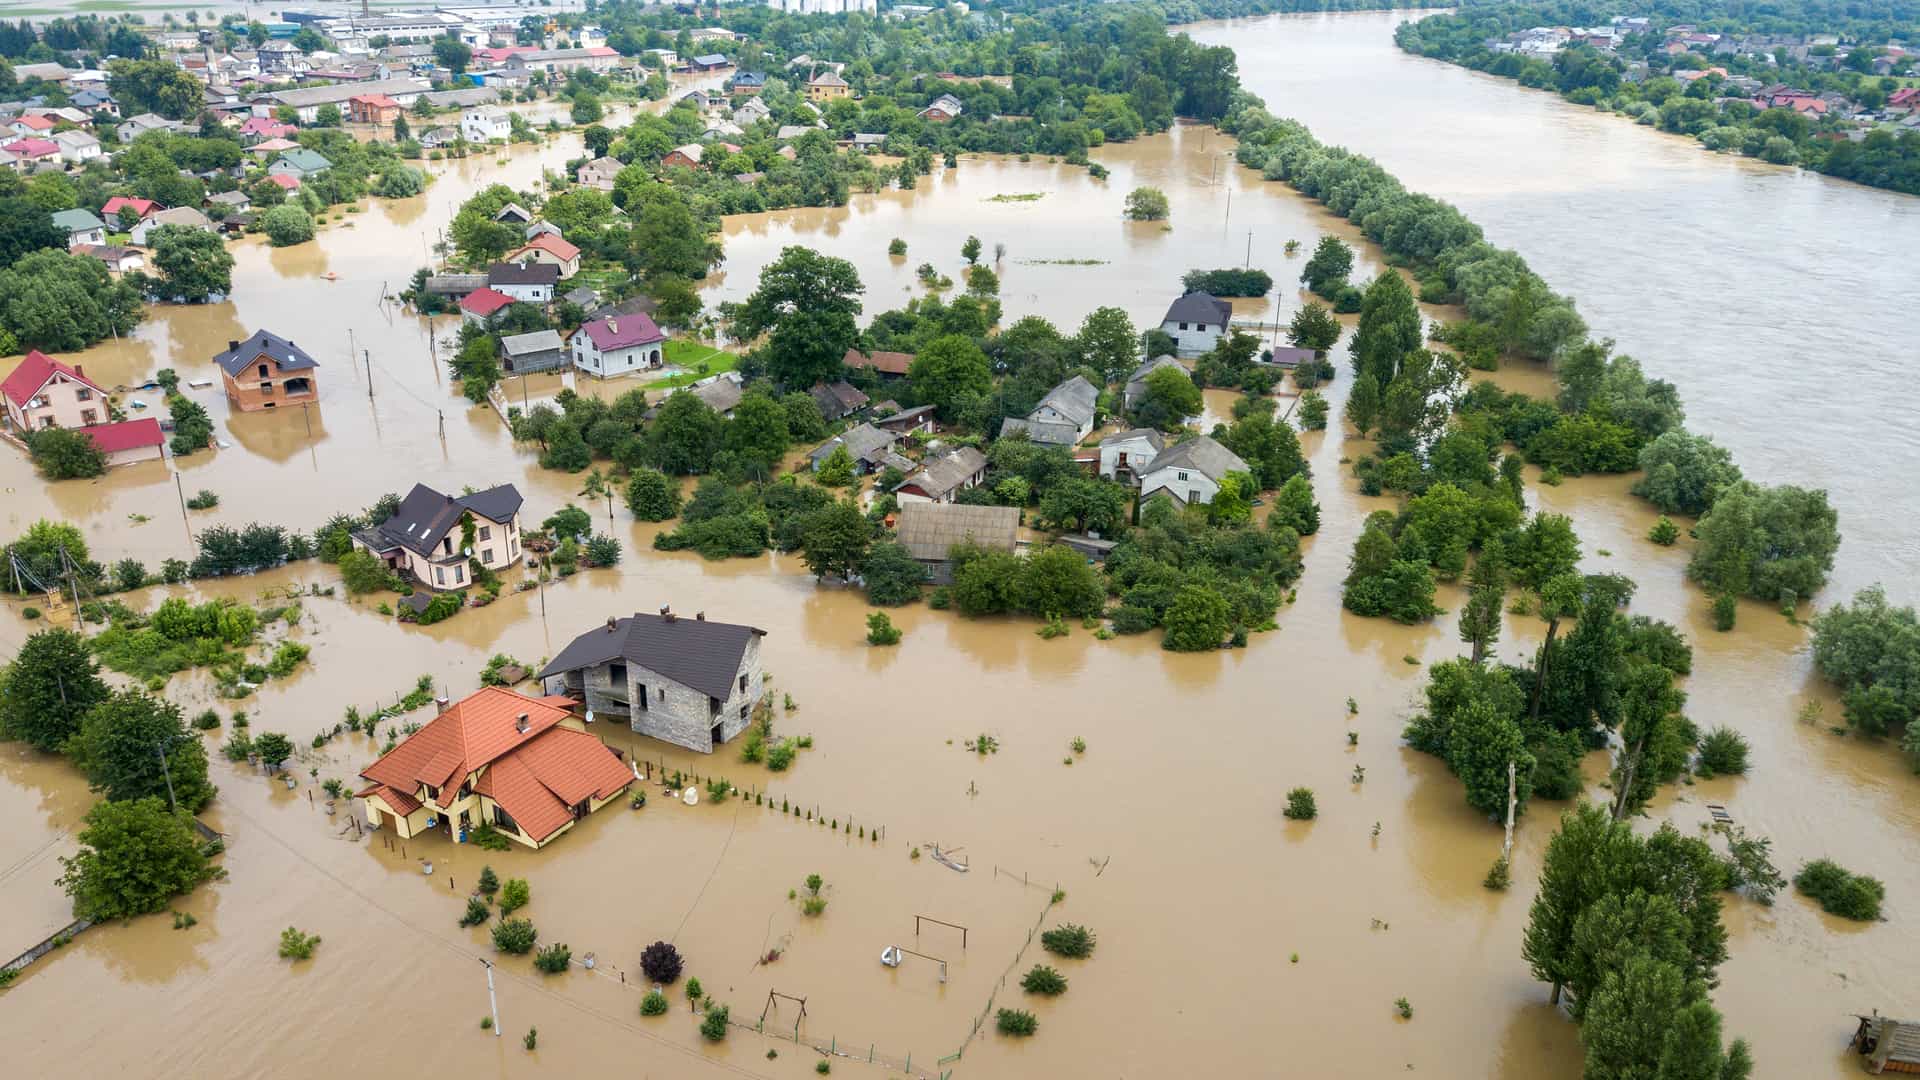 Casas unifamiliares en plena inundación por una crecida del río tras las lluvias, descubriremos las ventajas de un seguro de hogar frente a este tipo de fenómenos atmosféricos